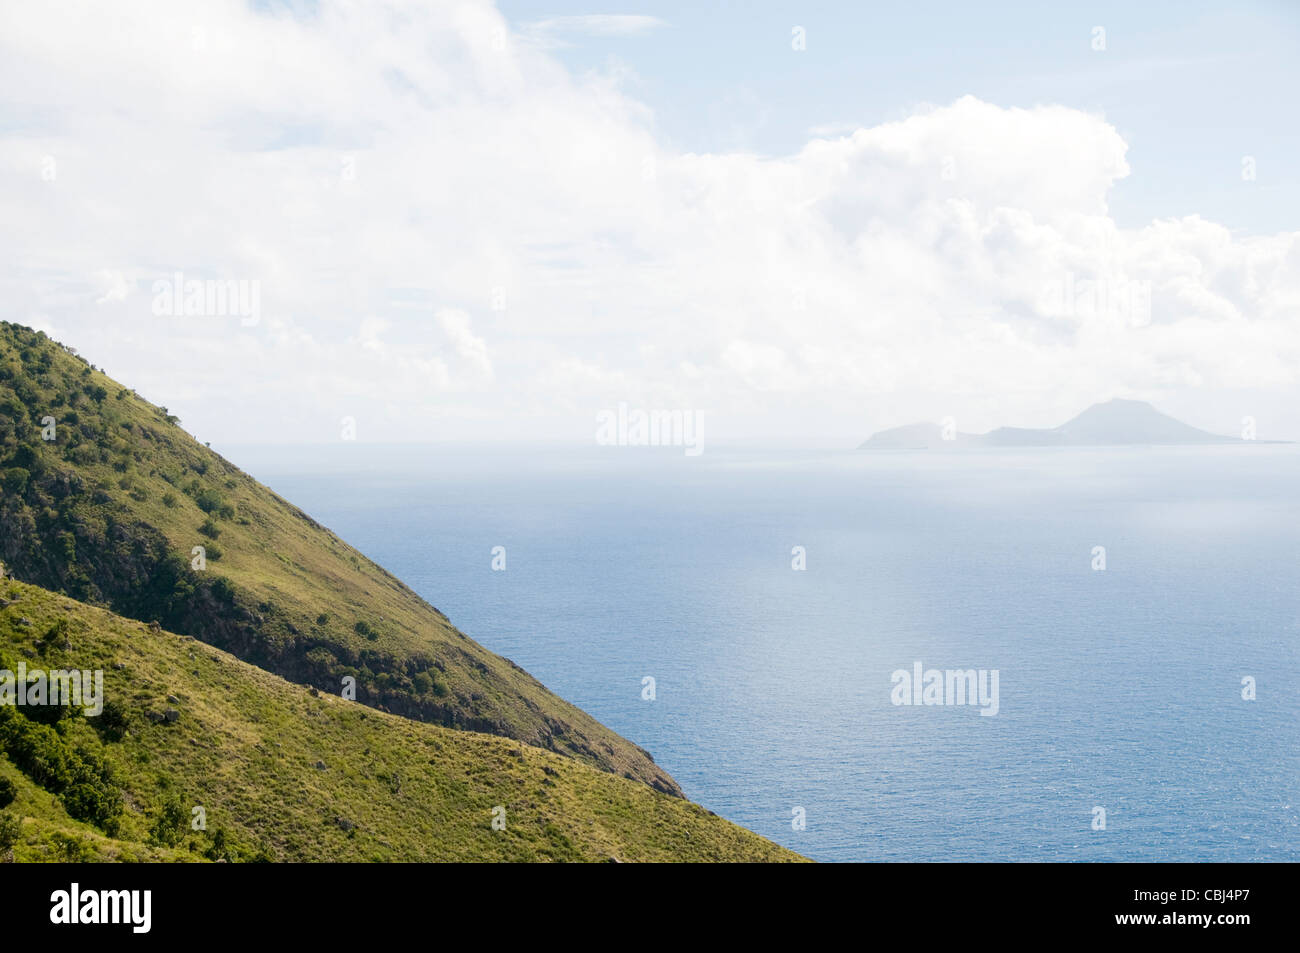 Antilles Néerlandaises Saba mountain cliff view de Saint-eustache en distance île néerlandaise des Caraïbes Banque D'Images